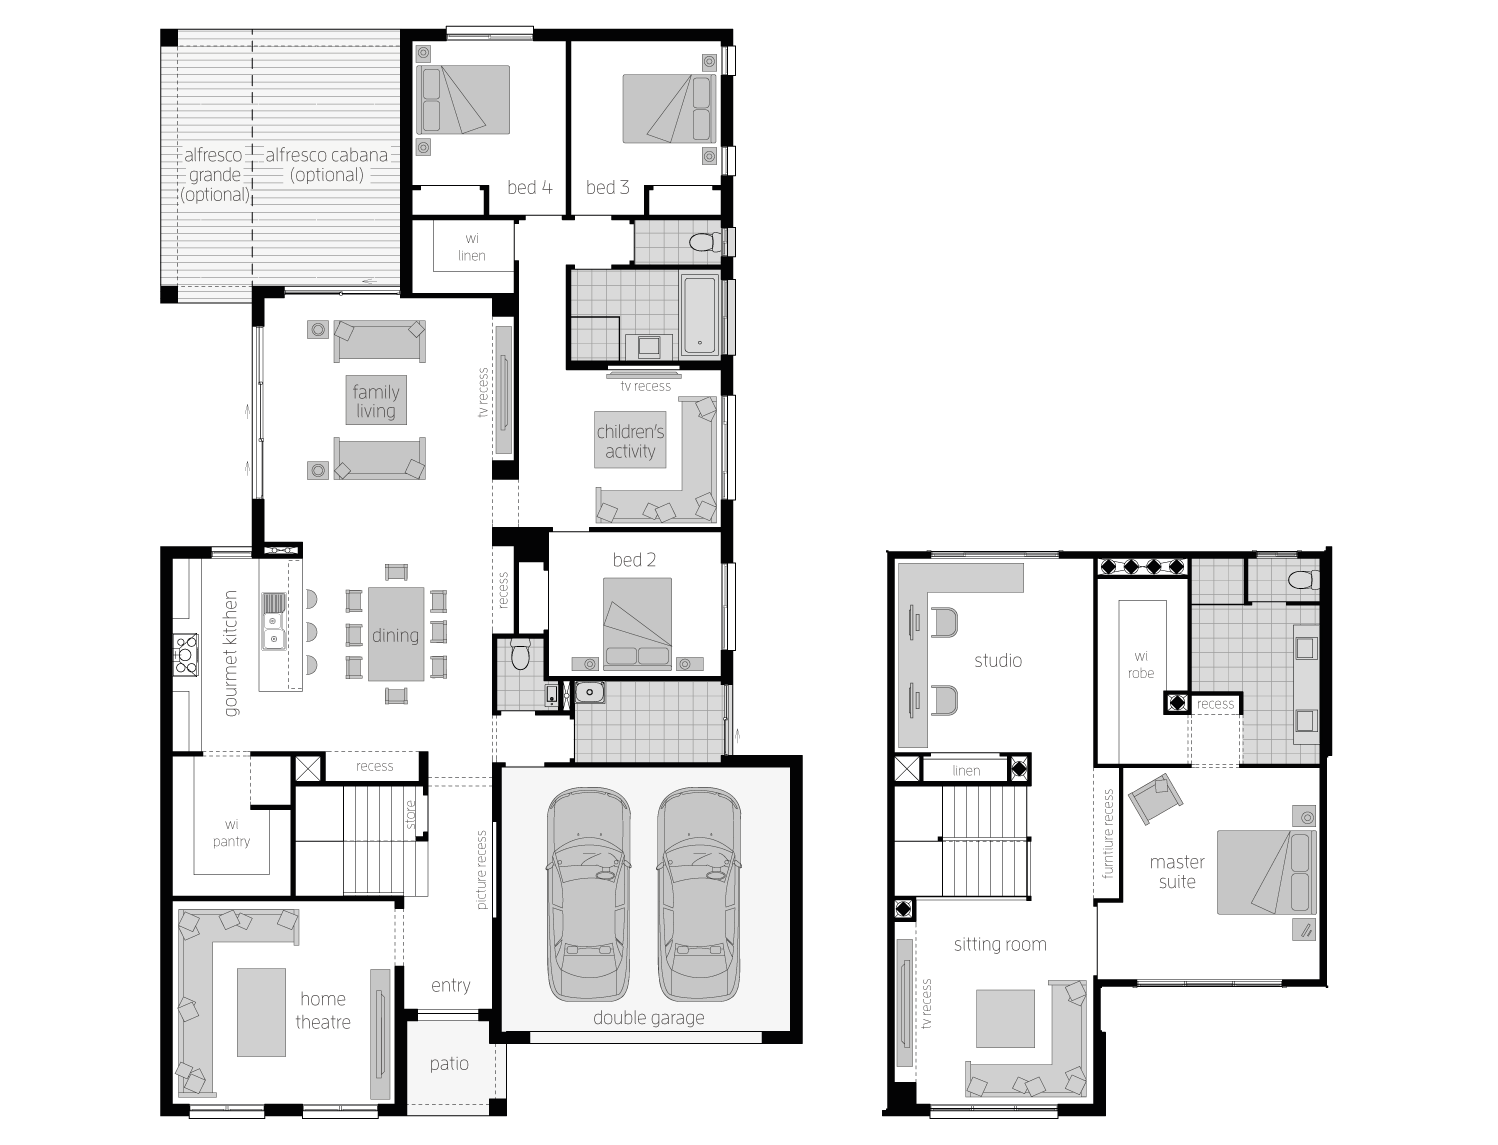 Floor Plan - Ellerston37 - Two Storey Home - McDonald Jones